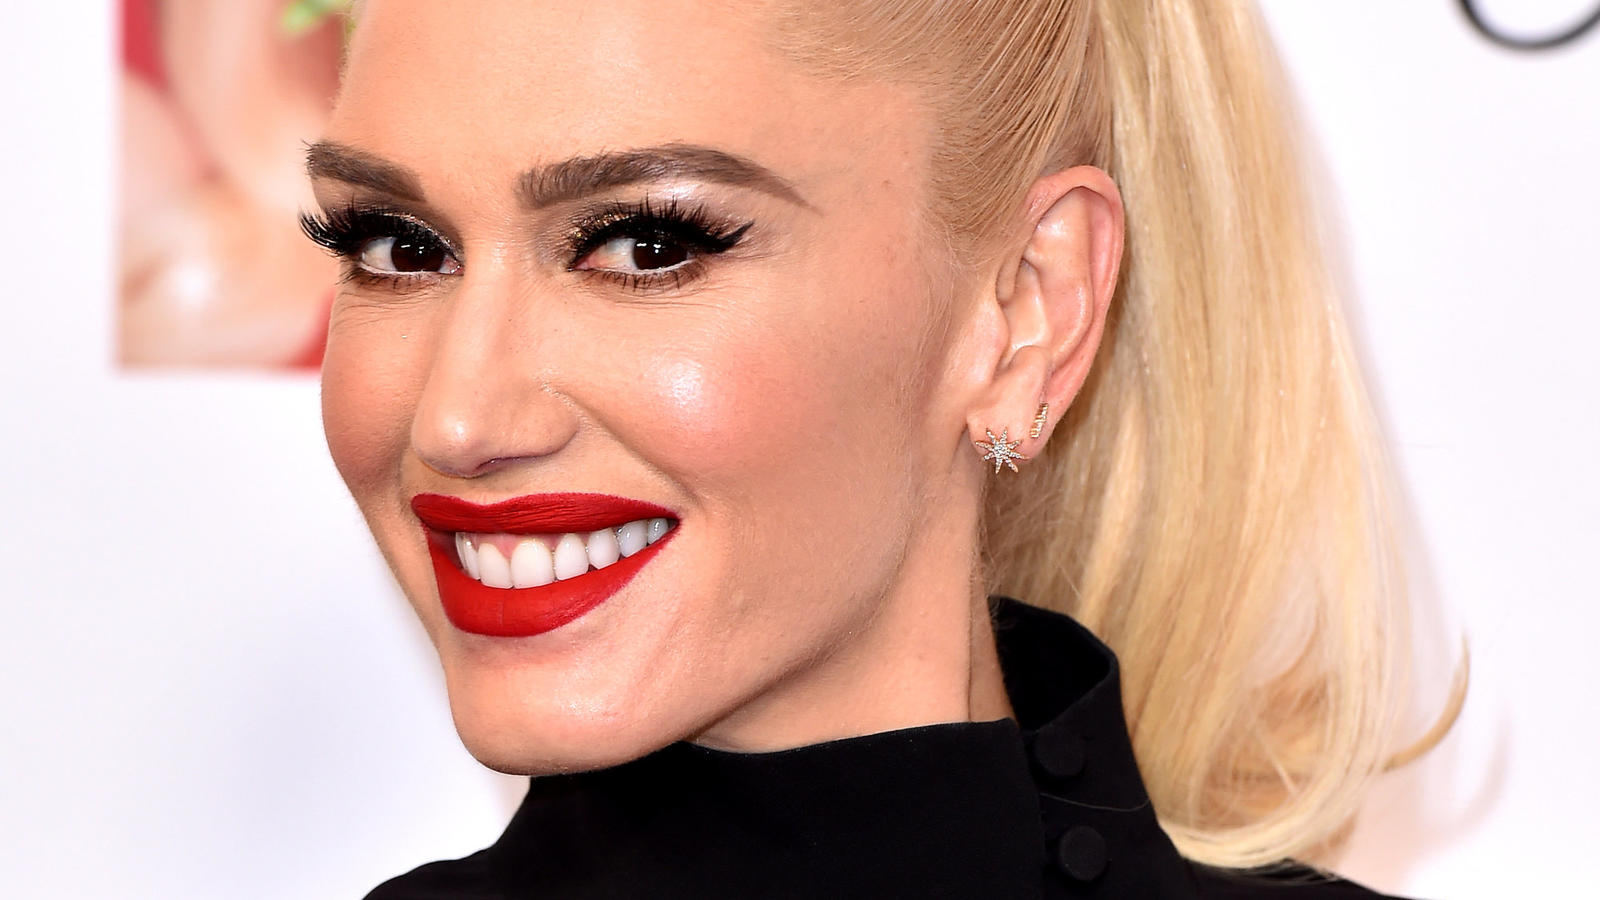 So kennt man Gwen Stefani: Blonde Haare und rote Lippen. 